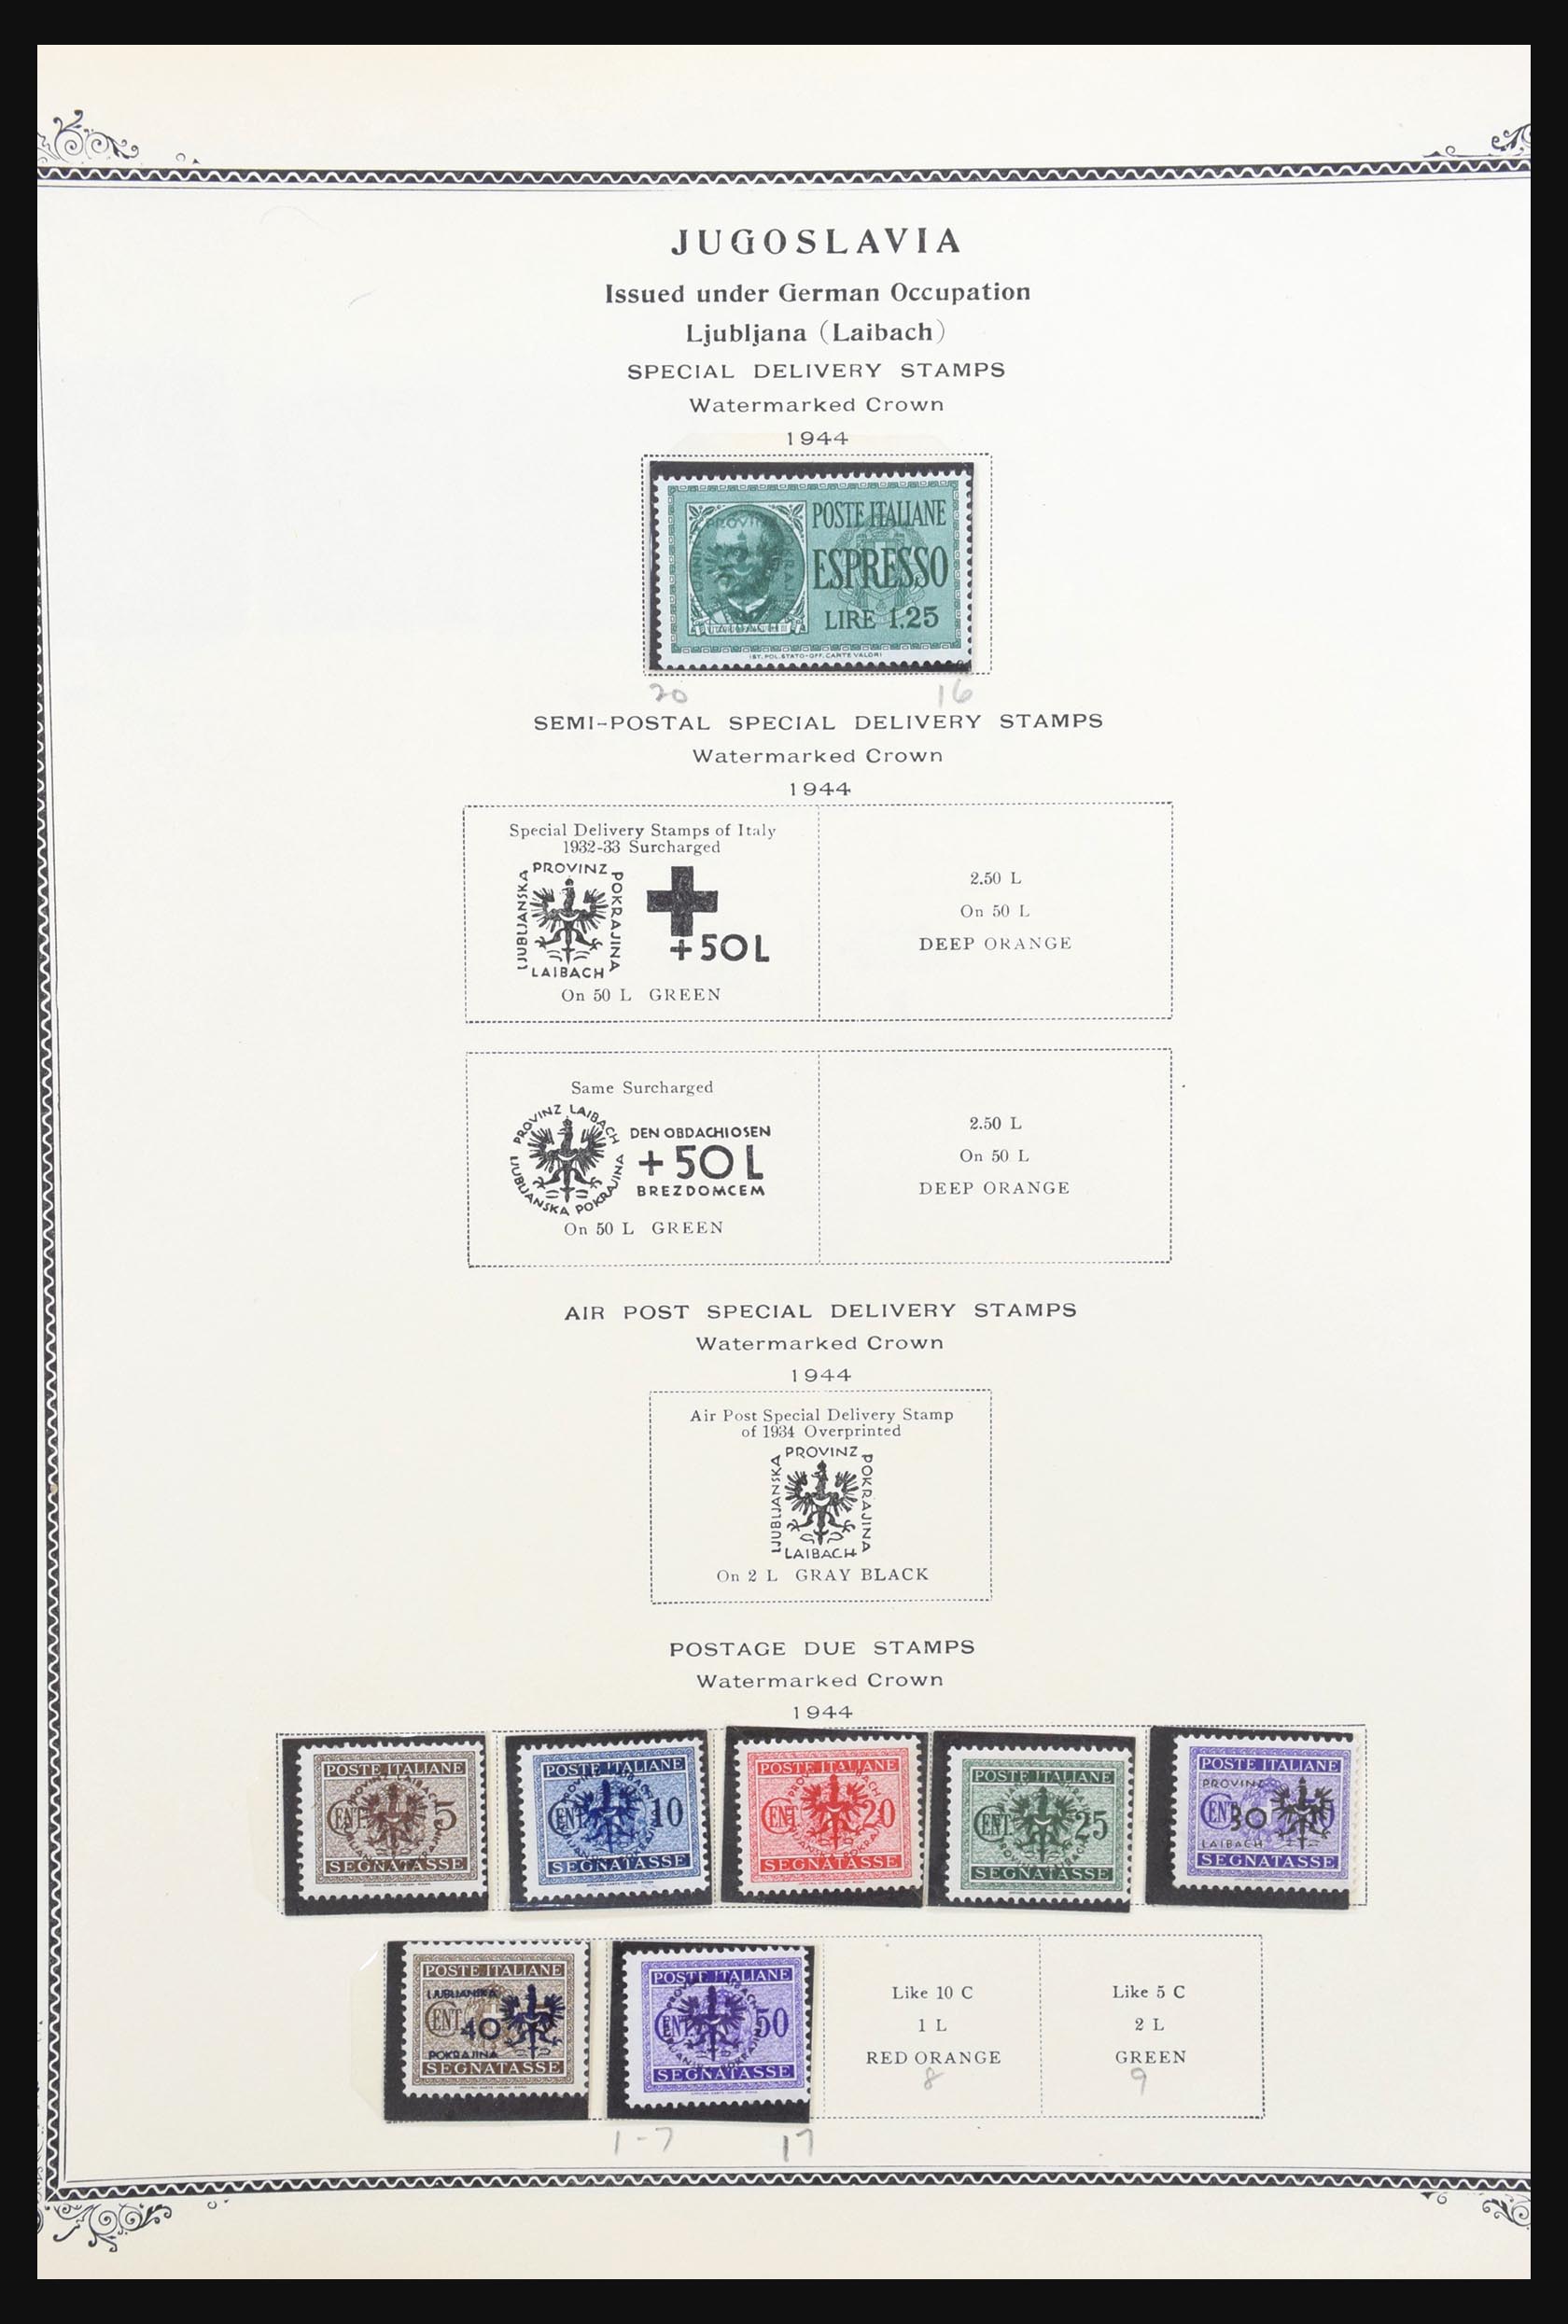 31300 103 - 31300 Duitsland superverzameling 1849-1990.